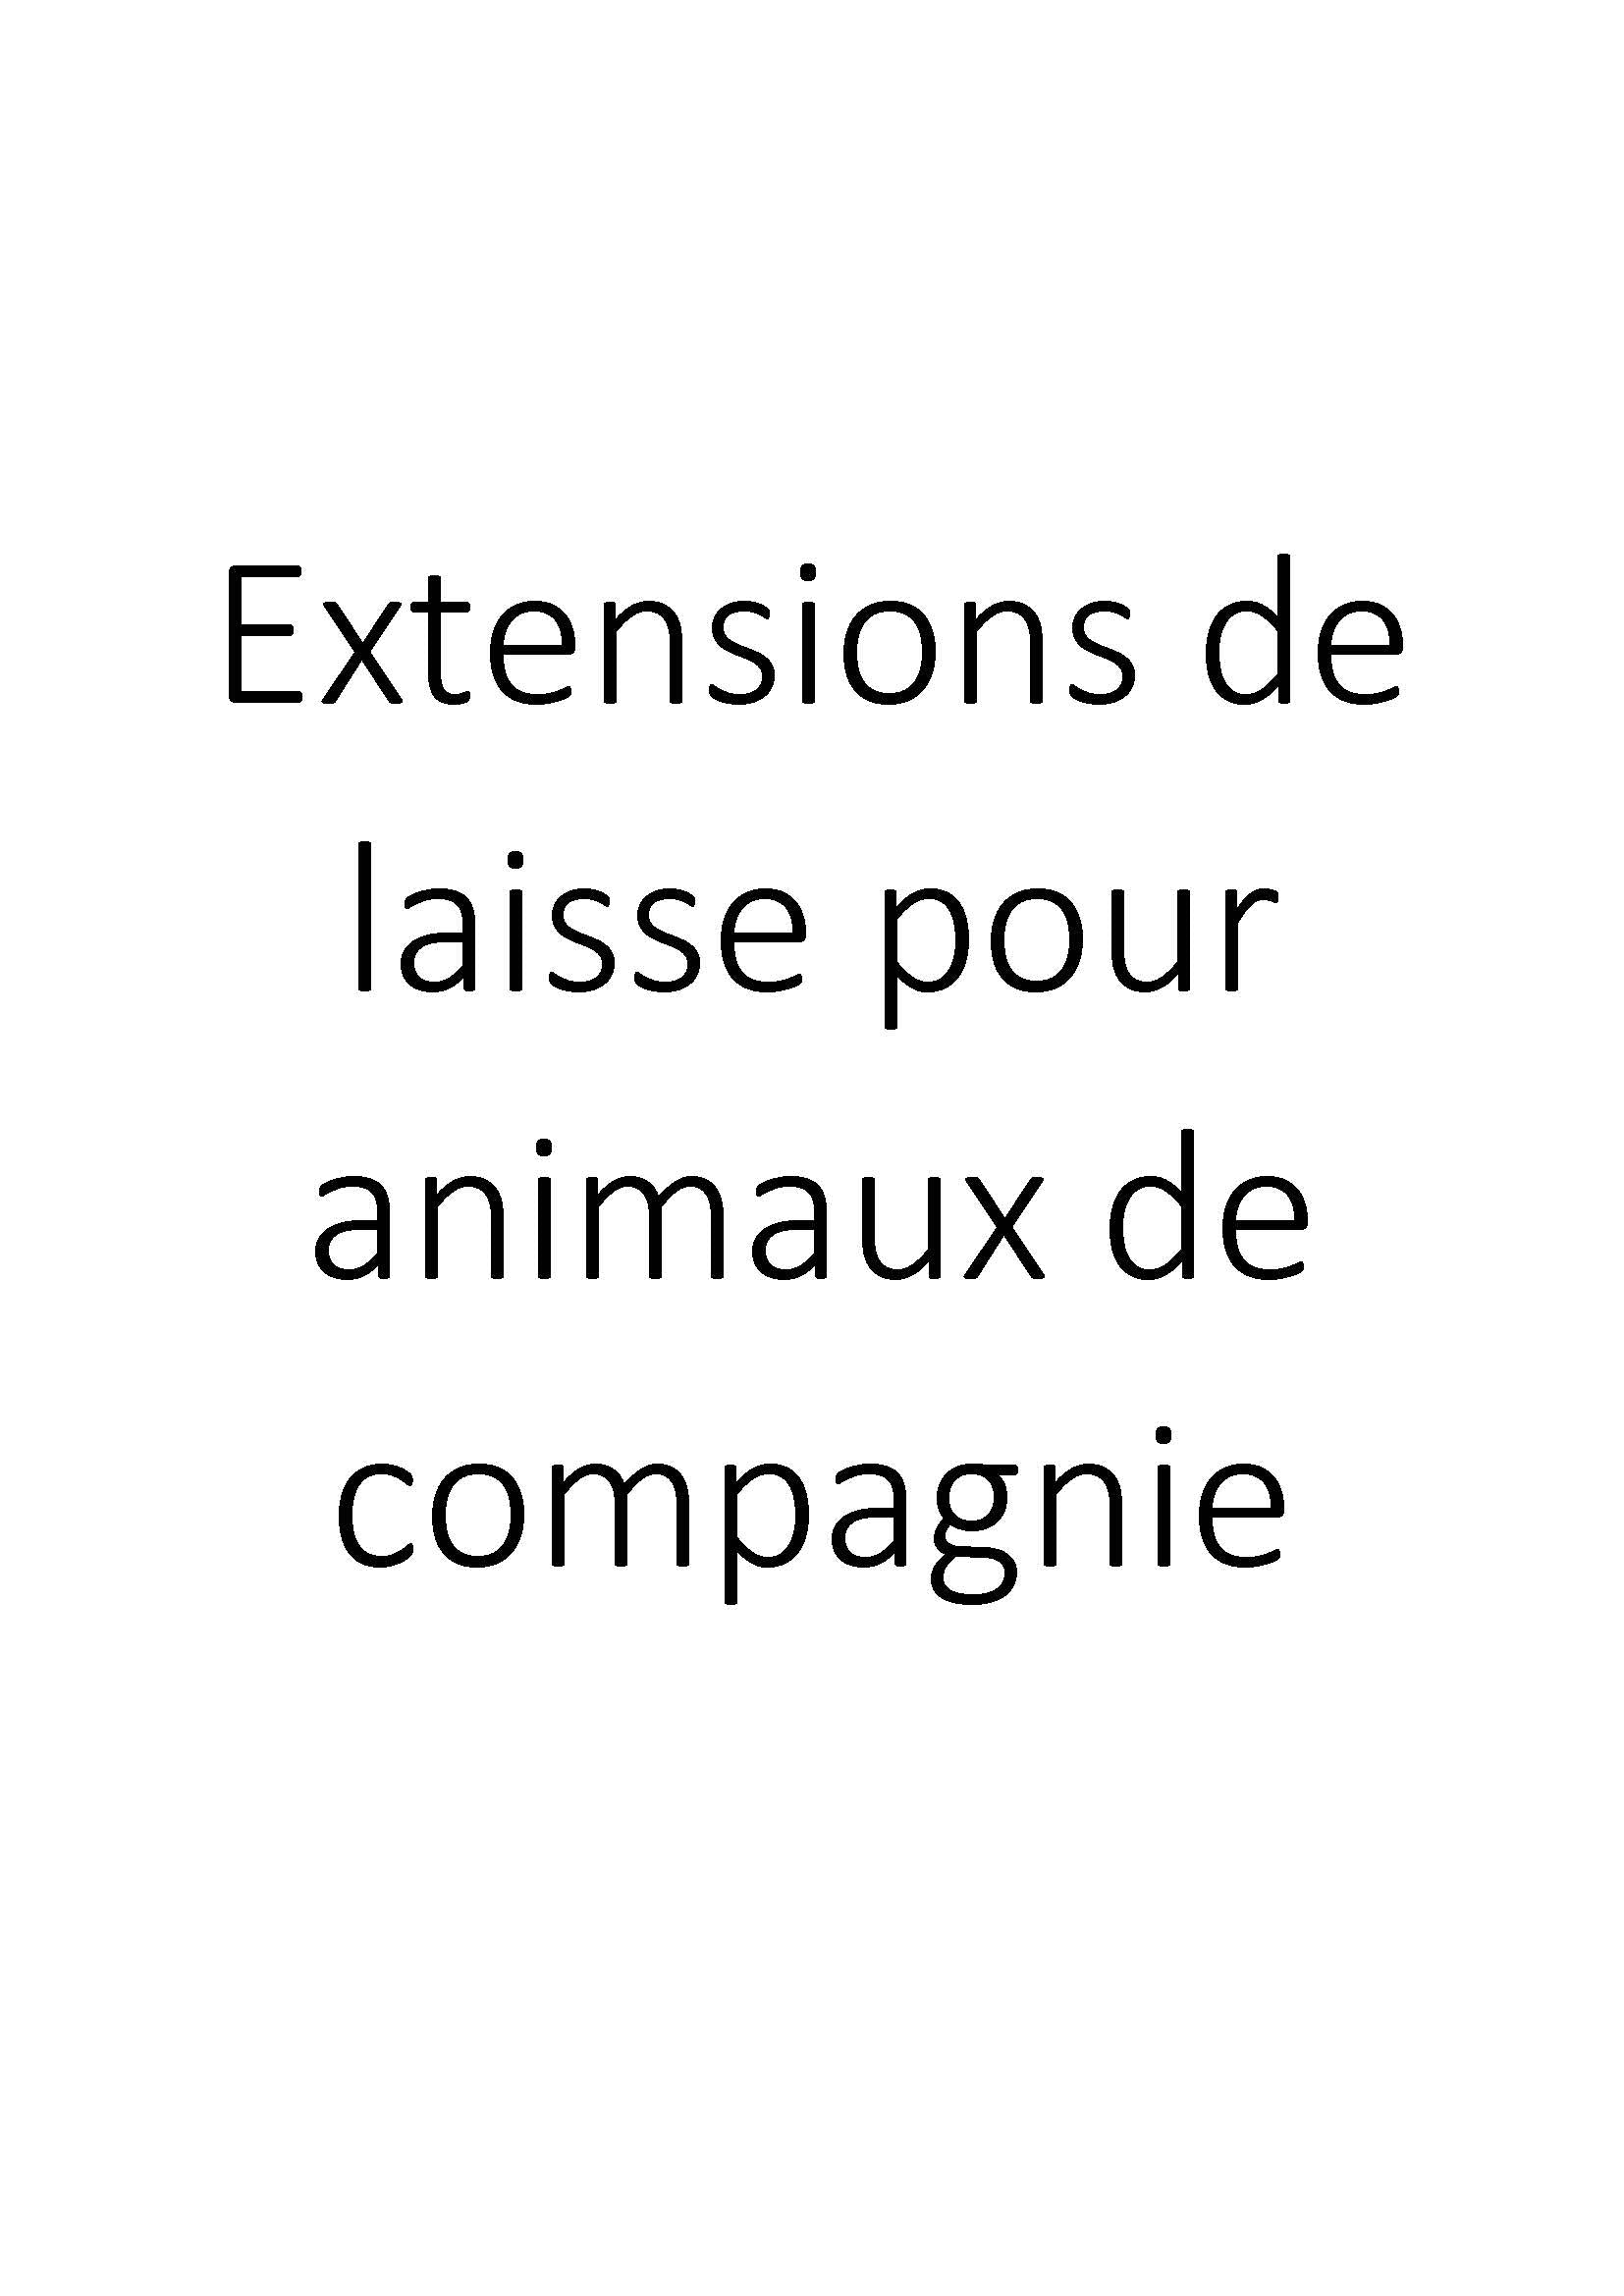 Extensions de laisse pour animaux de compagnie clicktofournisseur.com